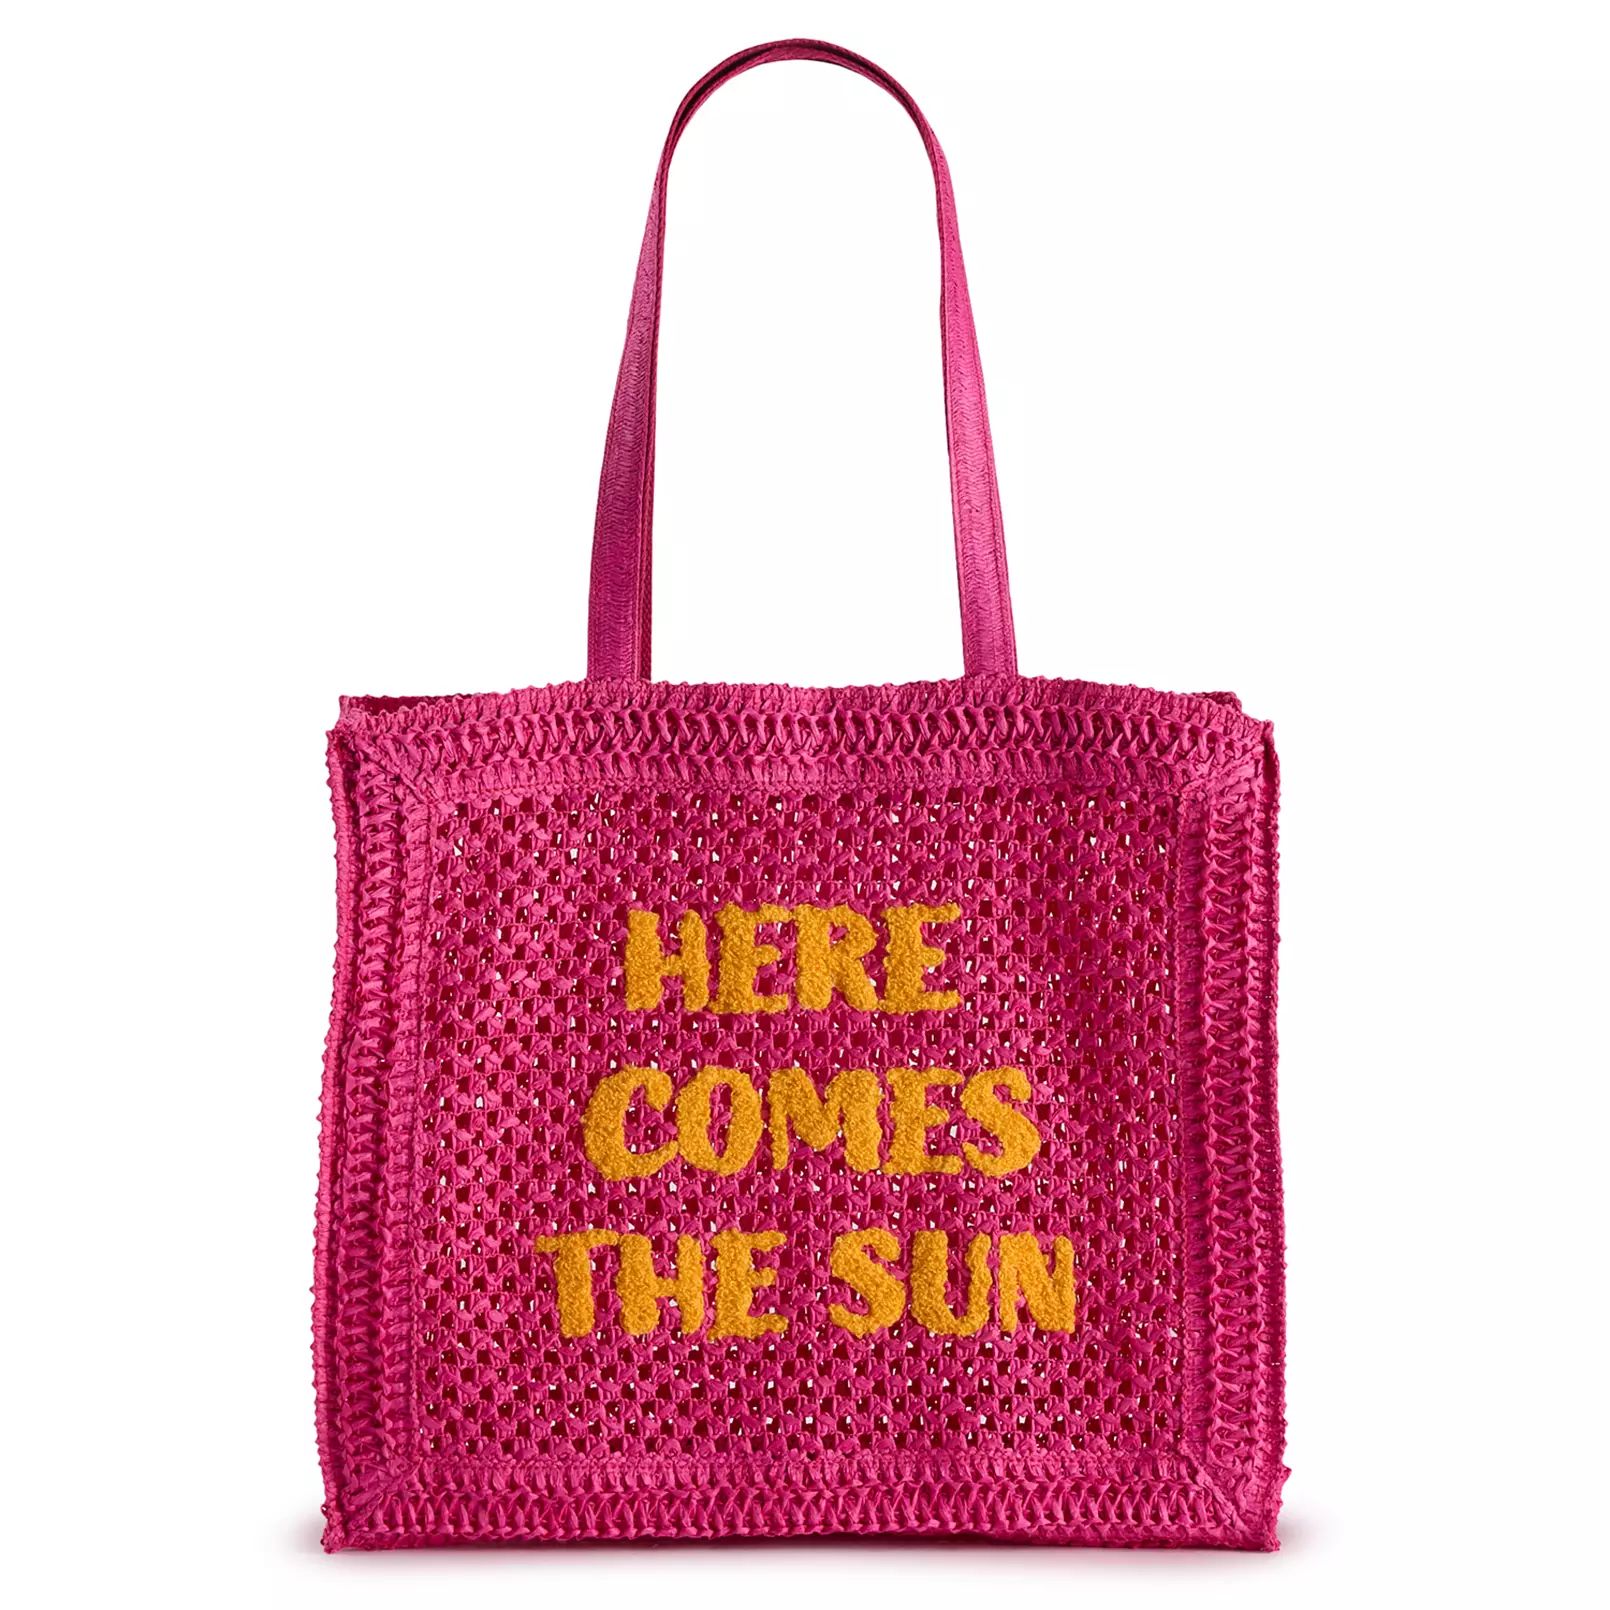 Crochet Beach Bag, Beach Accessories, Beach Outfit | Kohl's